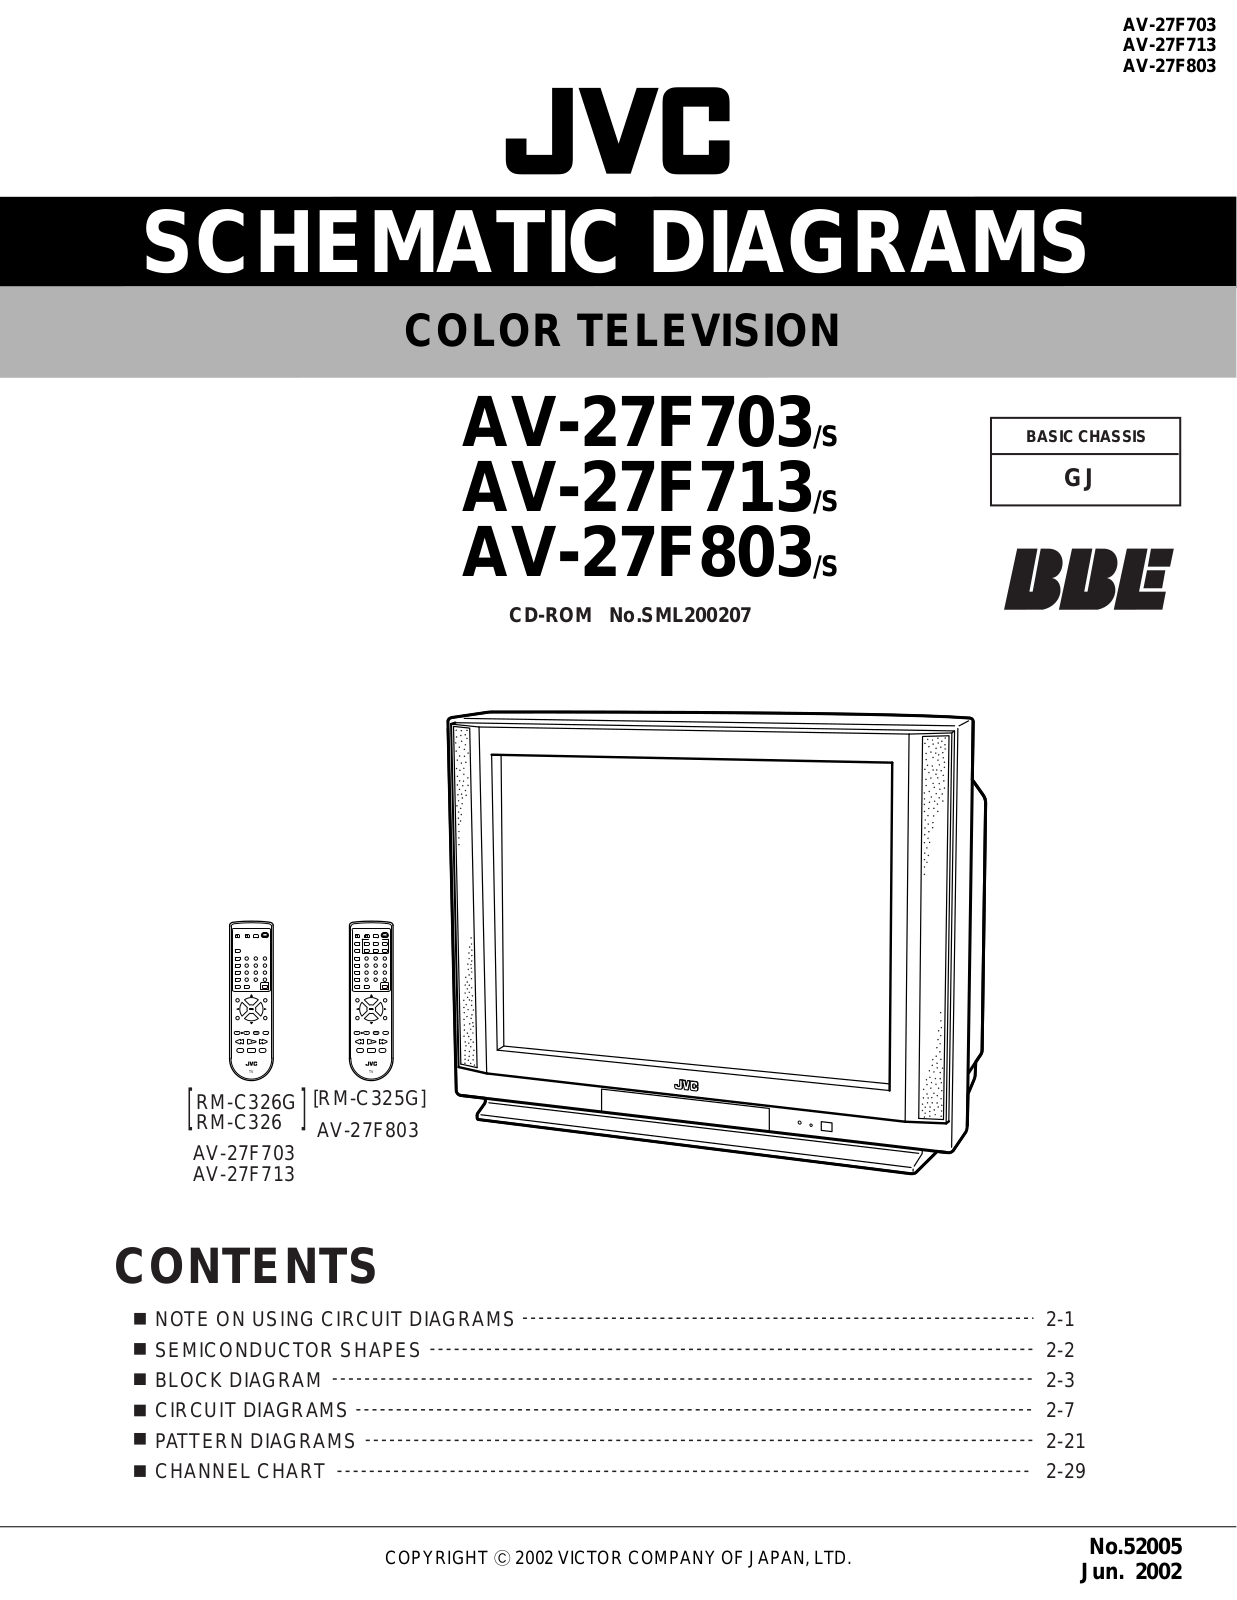 JVC AV-27F703/S, AV-27F713/S, AV-27F803/S Schematics